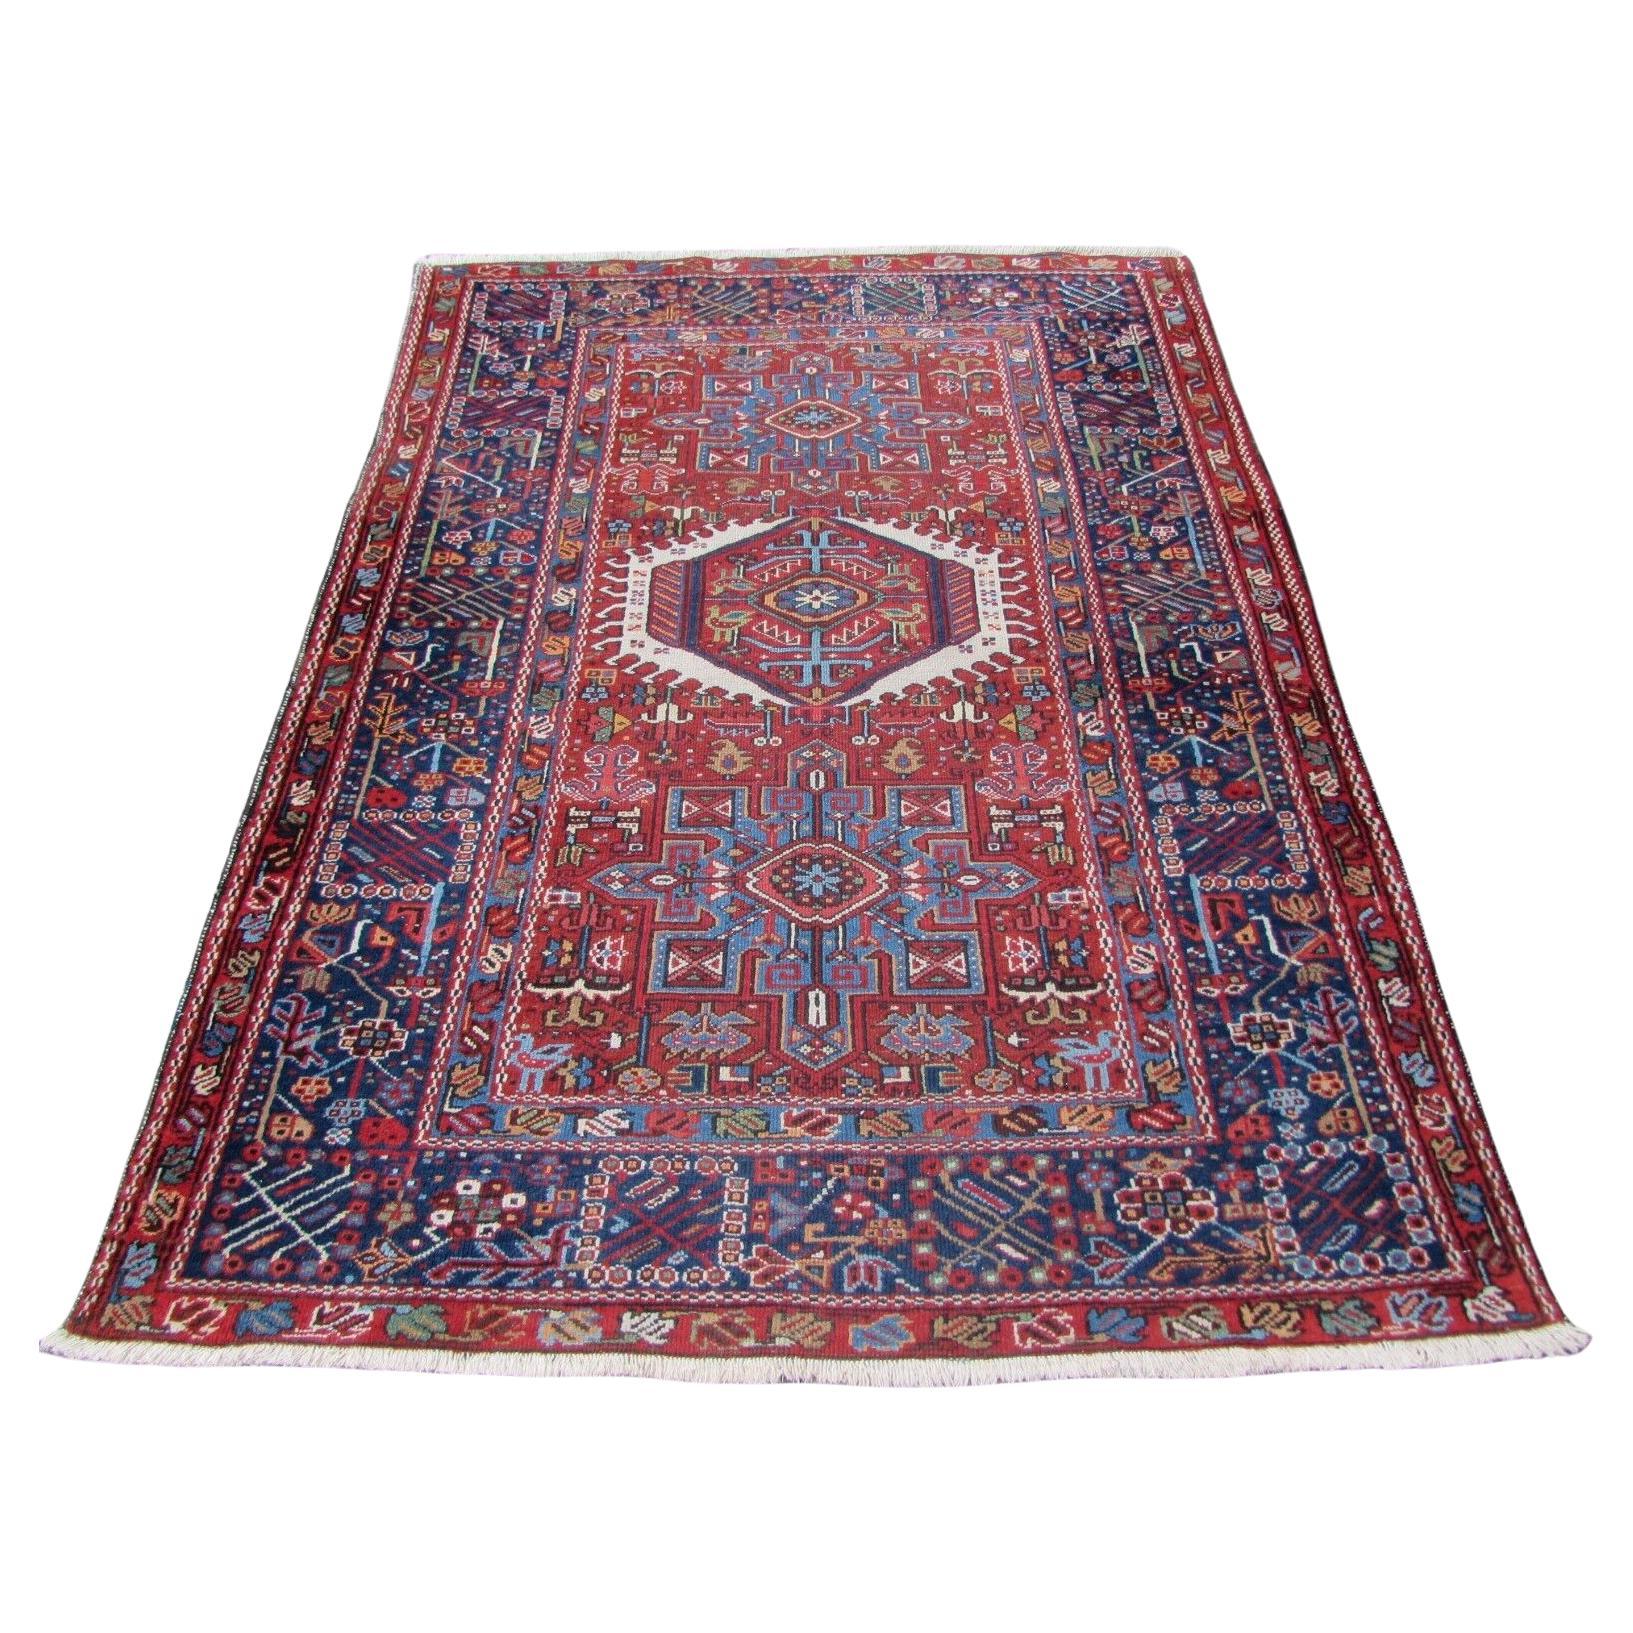  Handgefertigter antiker Karajeh-Teppich im persischen Stil 4,6' x 6', 1920er Jahre - 1Q56